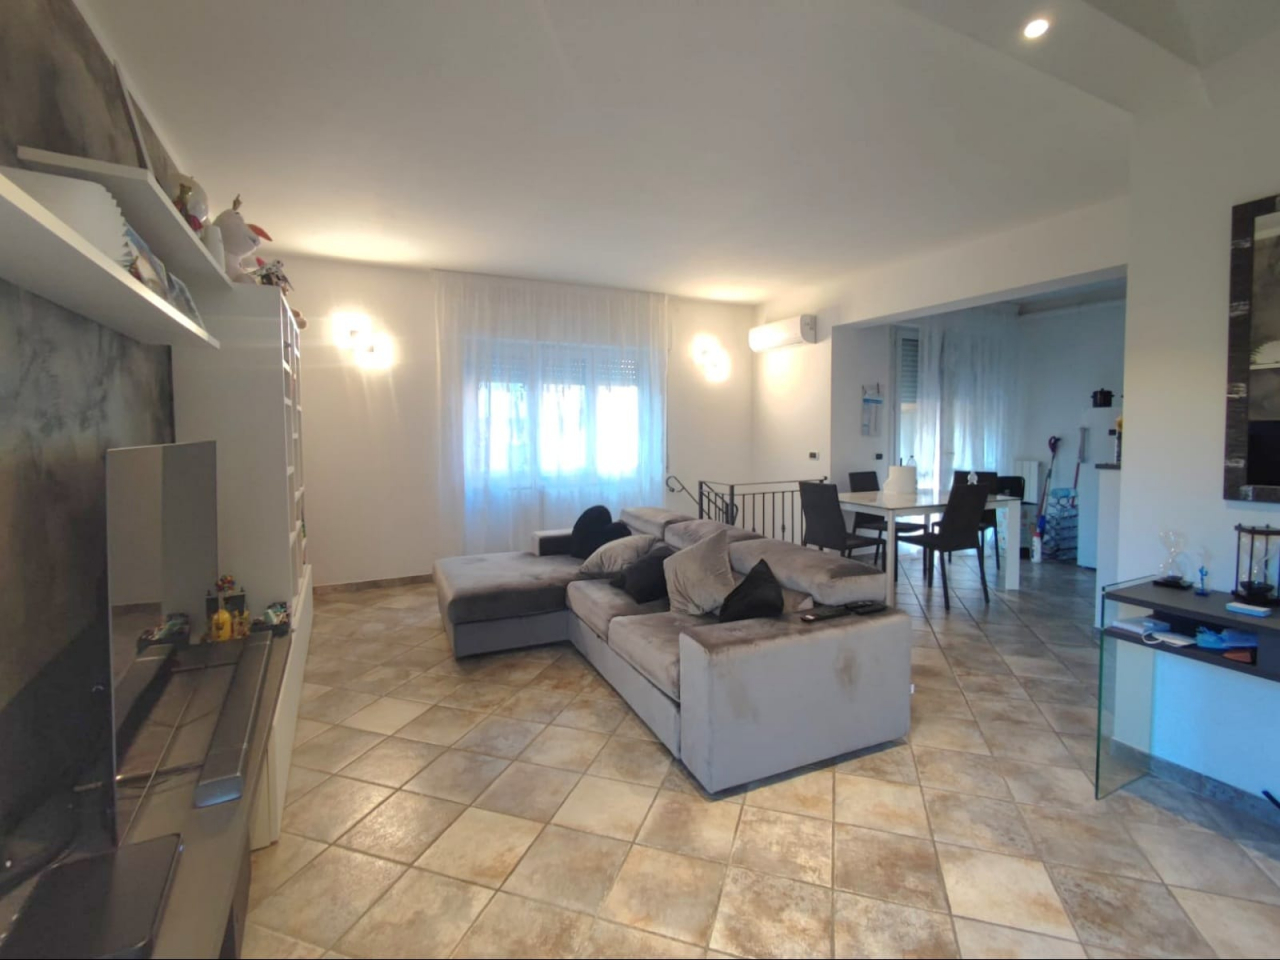 Appartamento indipendente in vendita a Venturina Terme (LI) - rif. A838